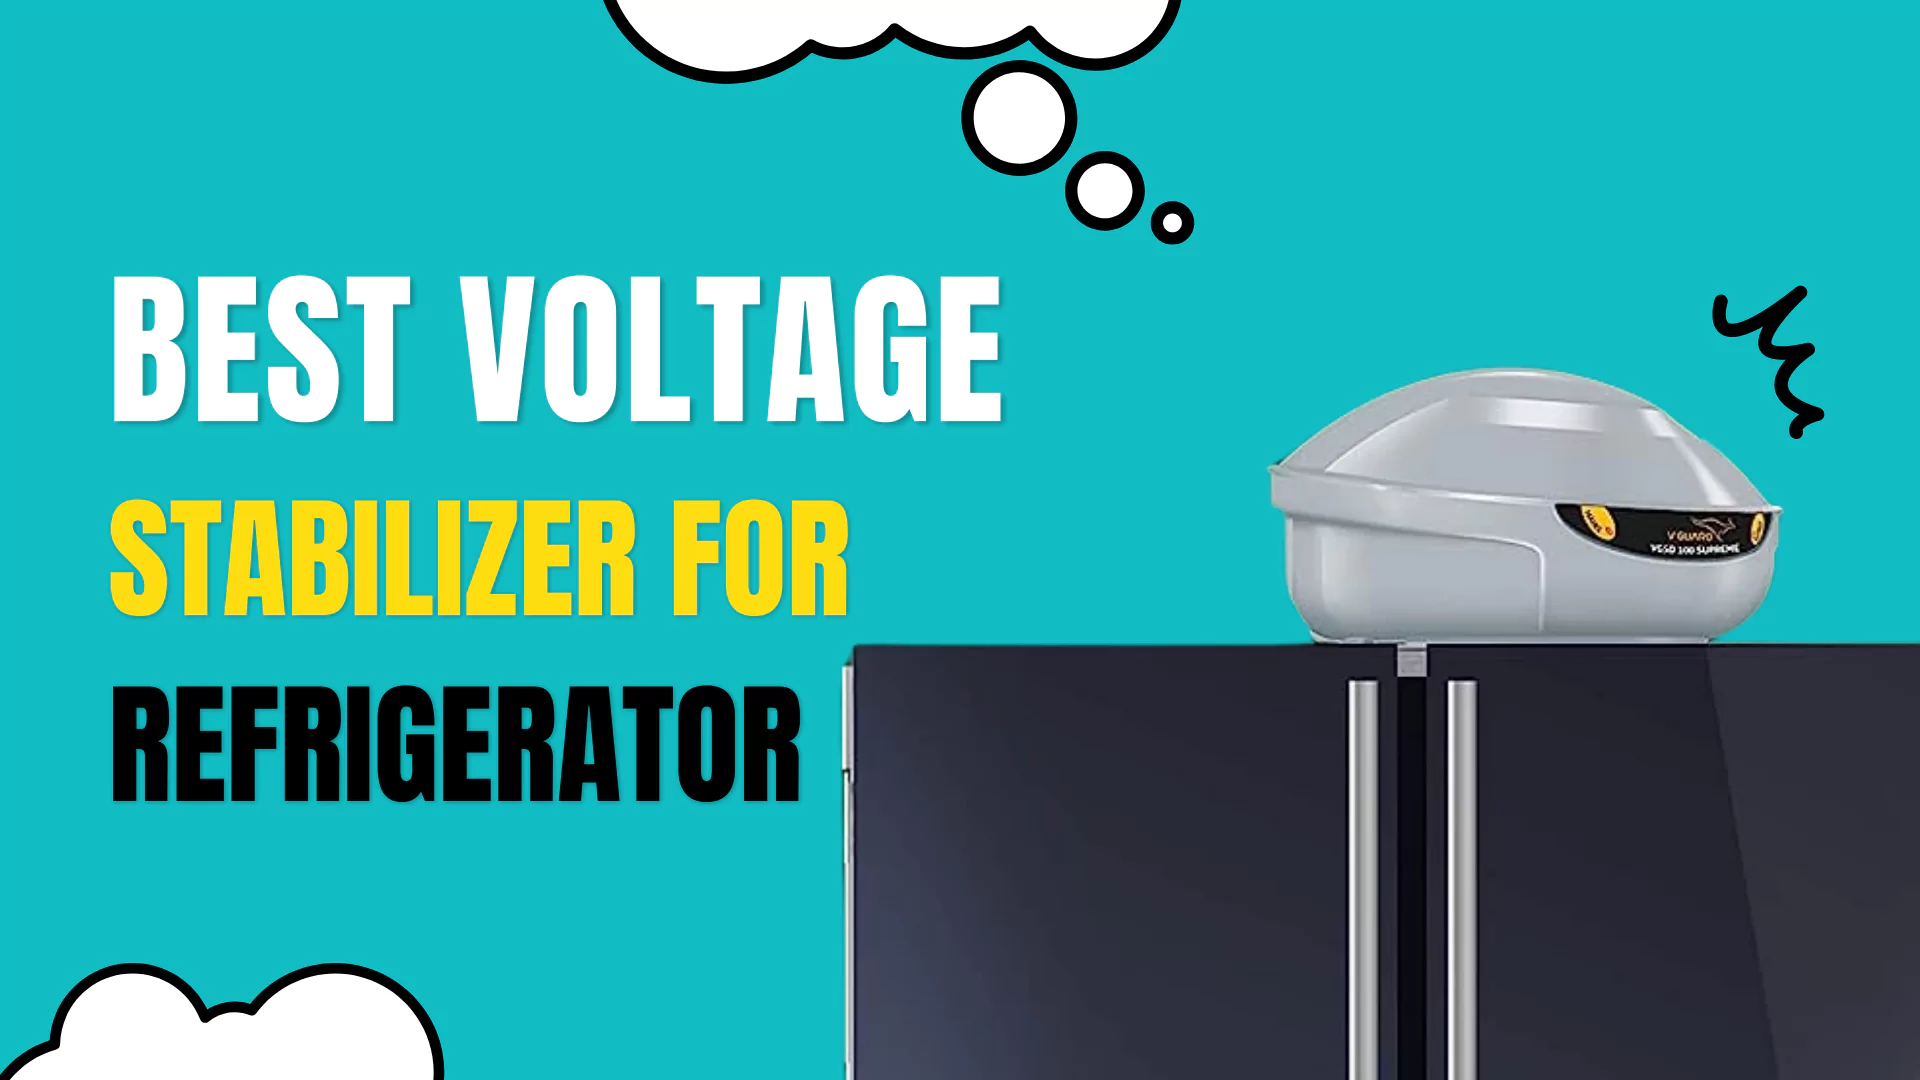 Best Voltage Stabilizer for Refrigerator